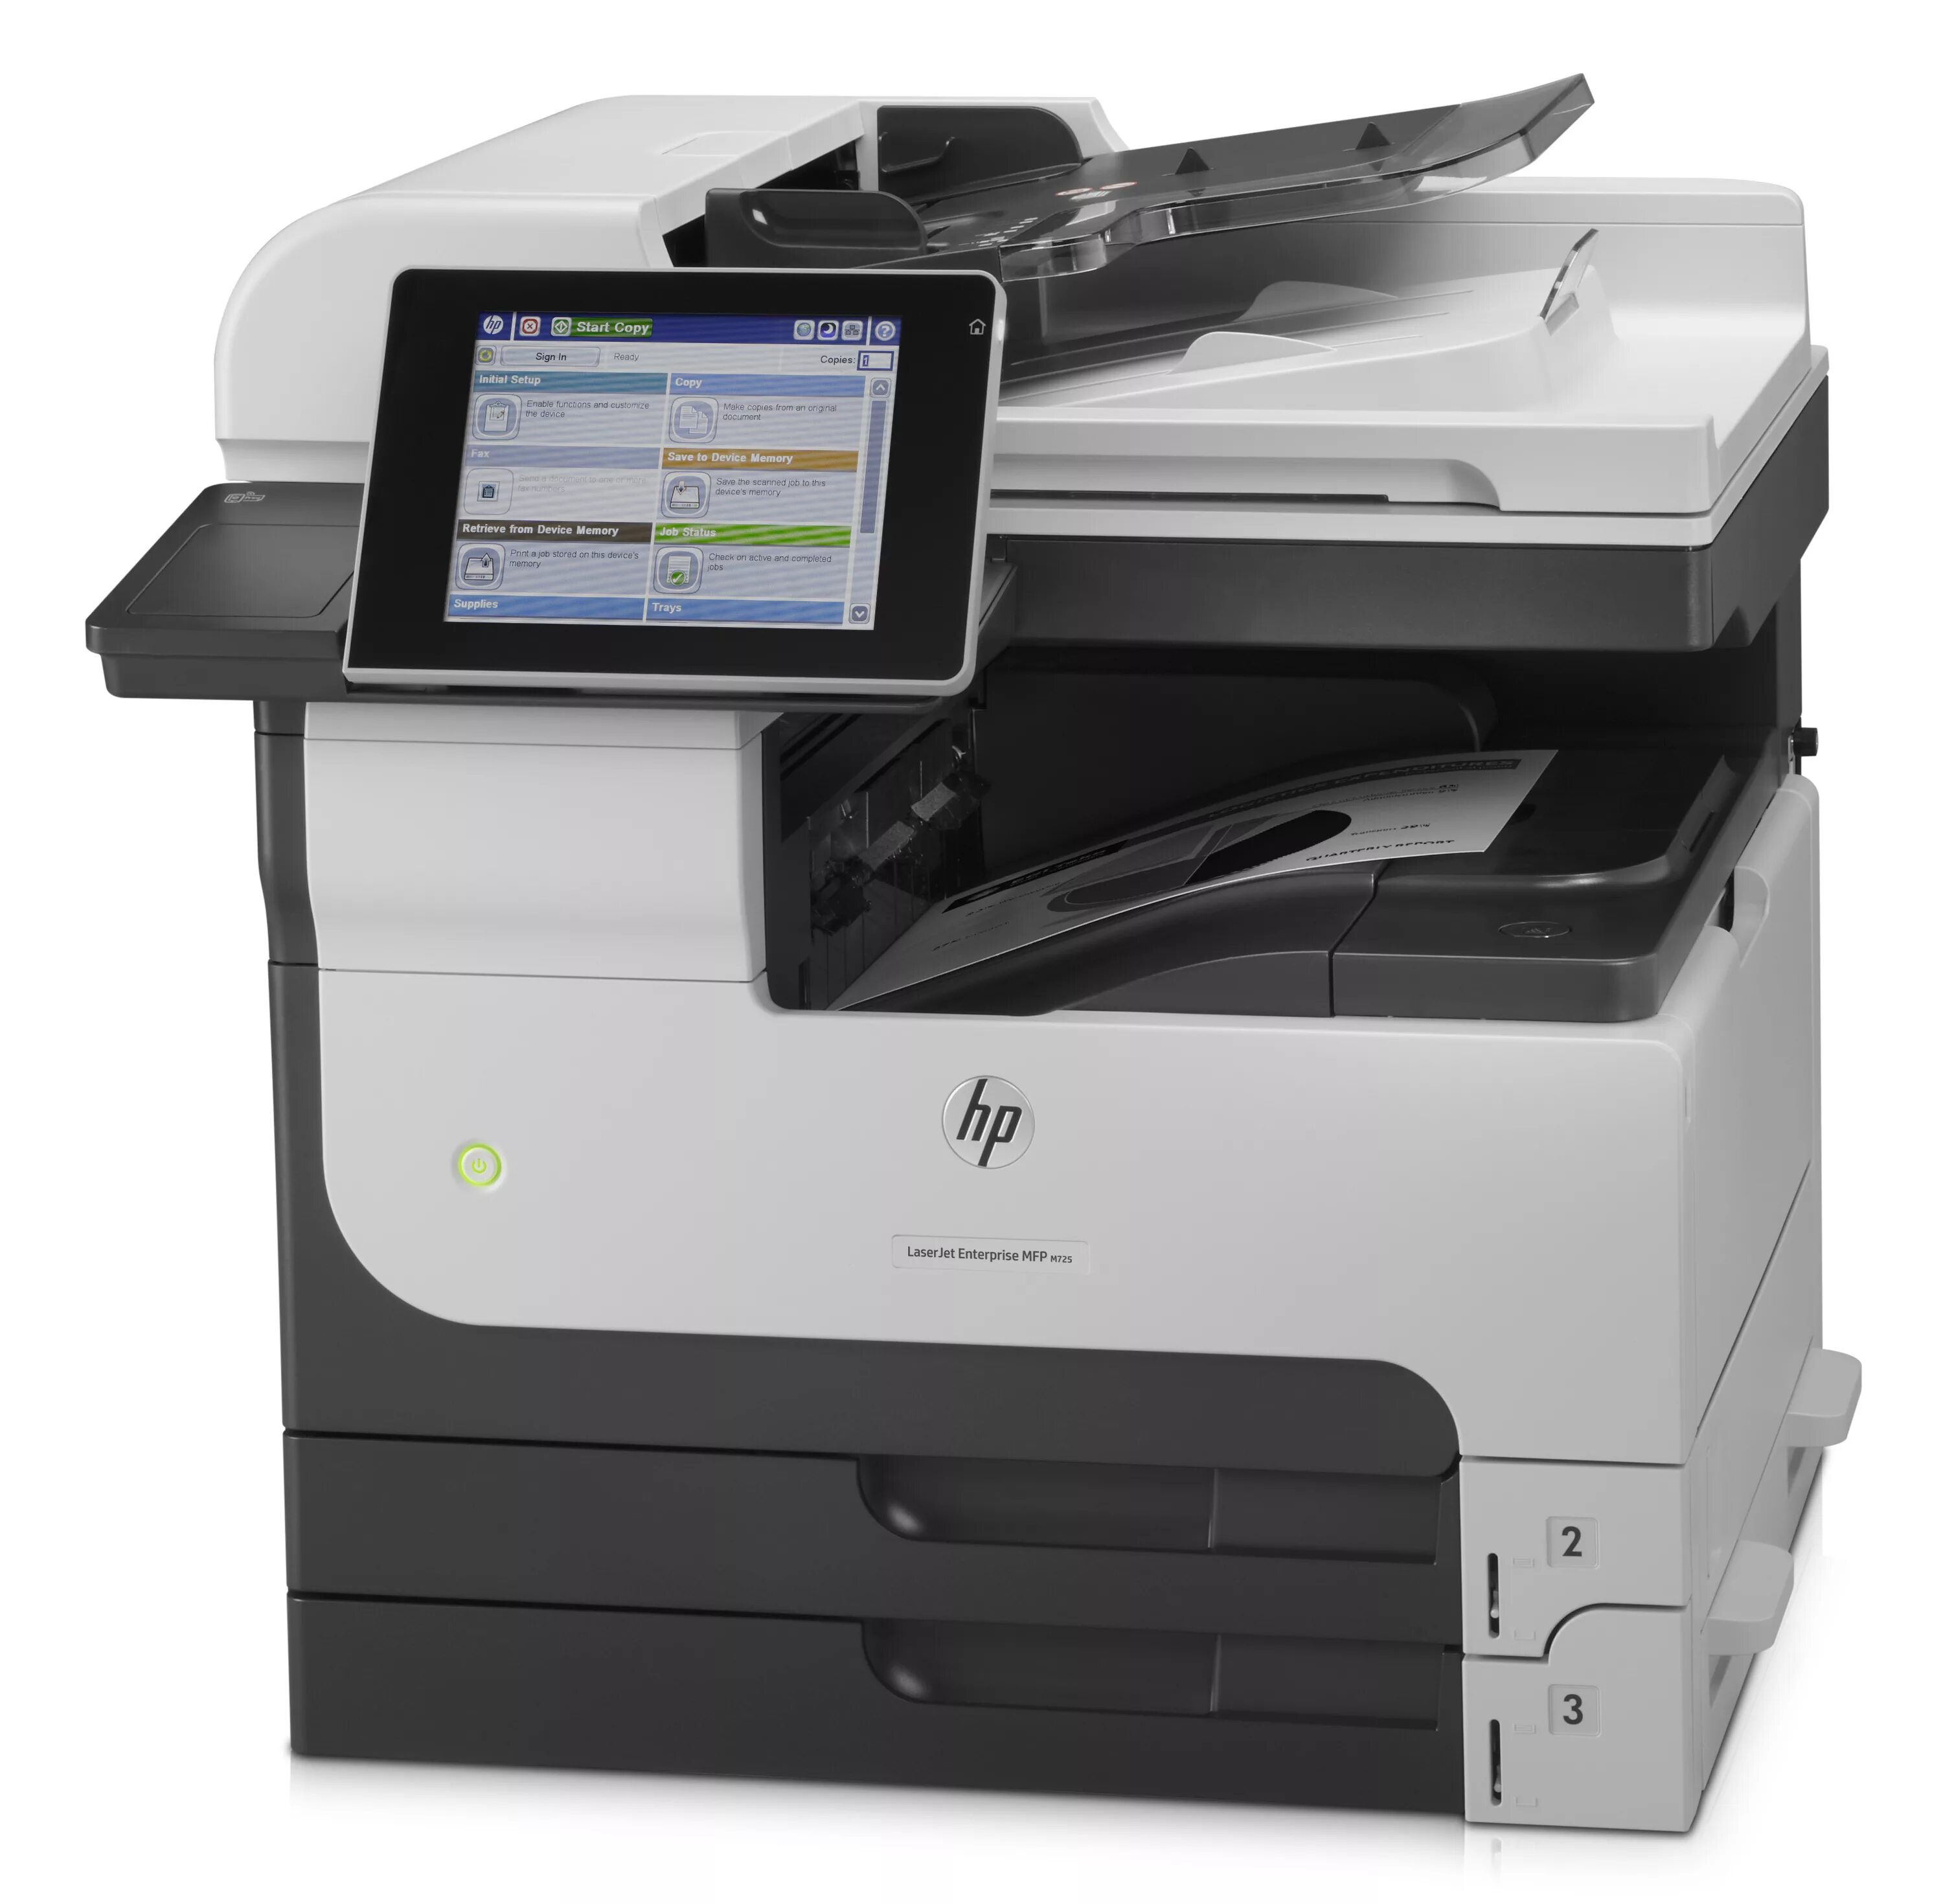 Купить принтер для офиса. LASERJET Enterprise MFP m725.